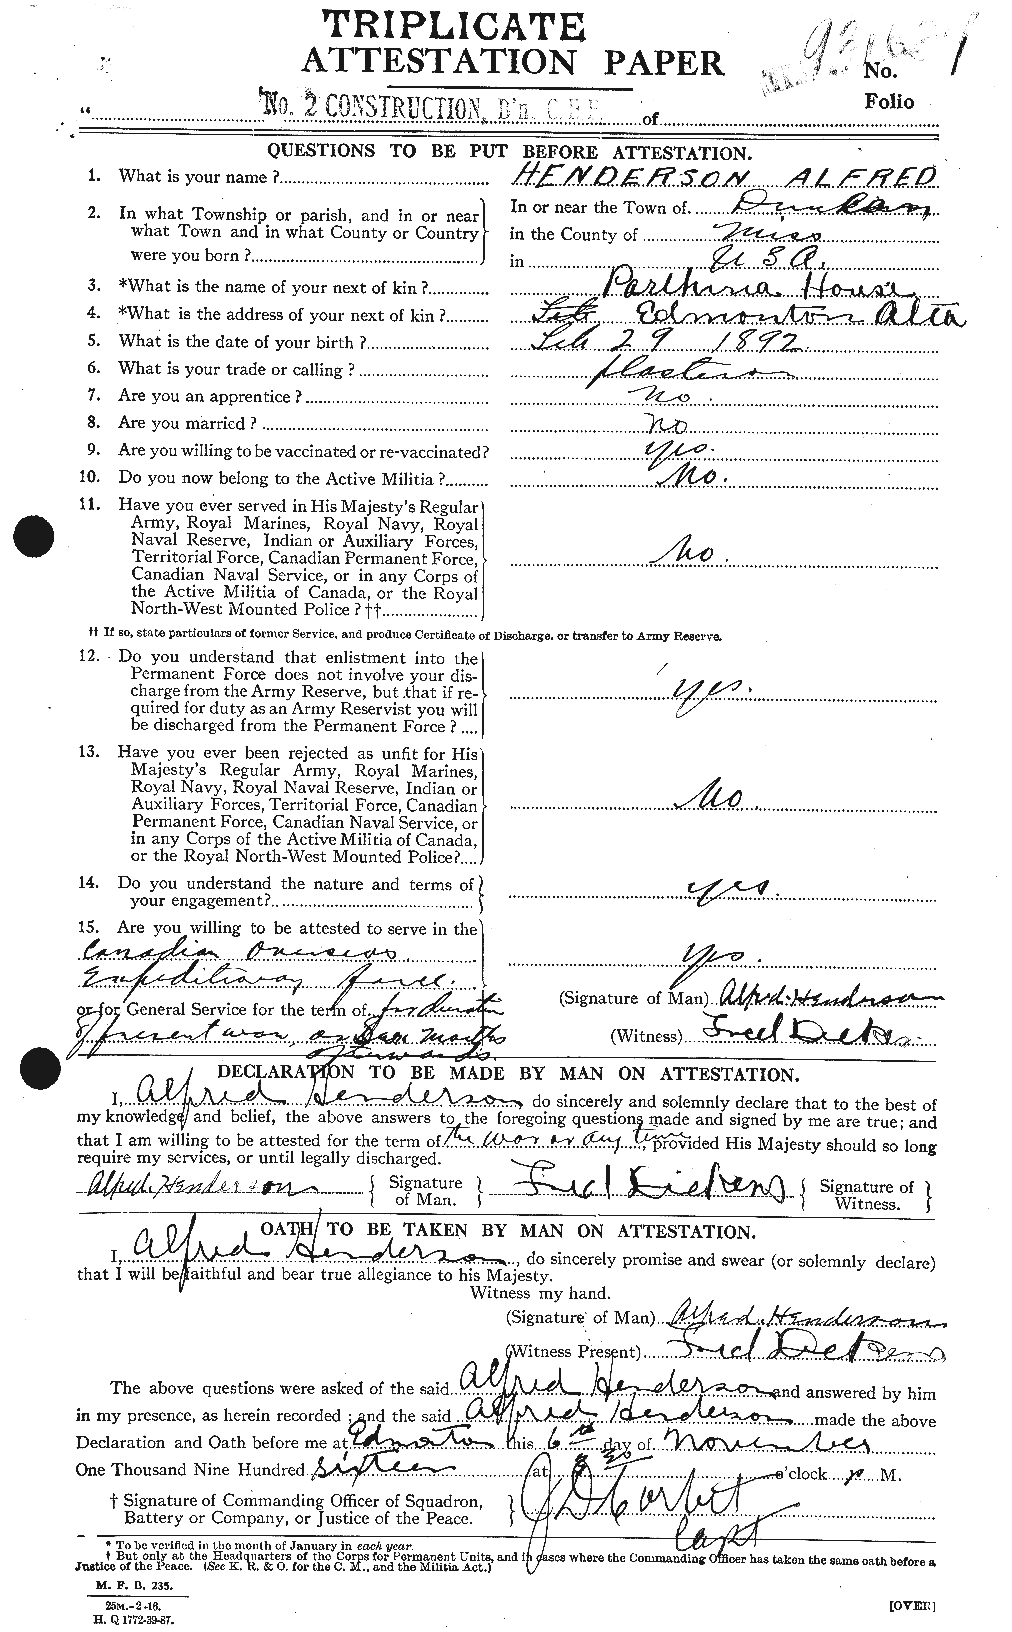 Dossiers du Personnel de la Première Guerre mondiale - CEC 390024a